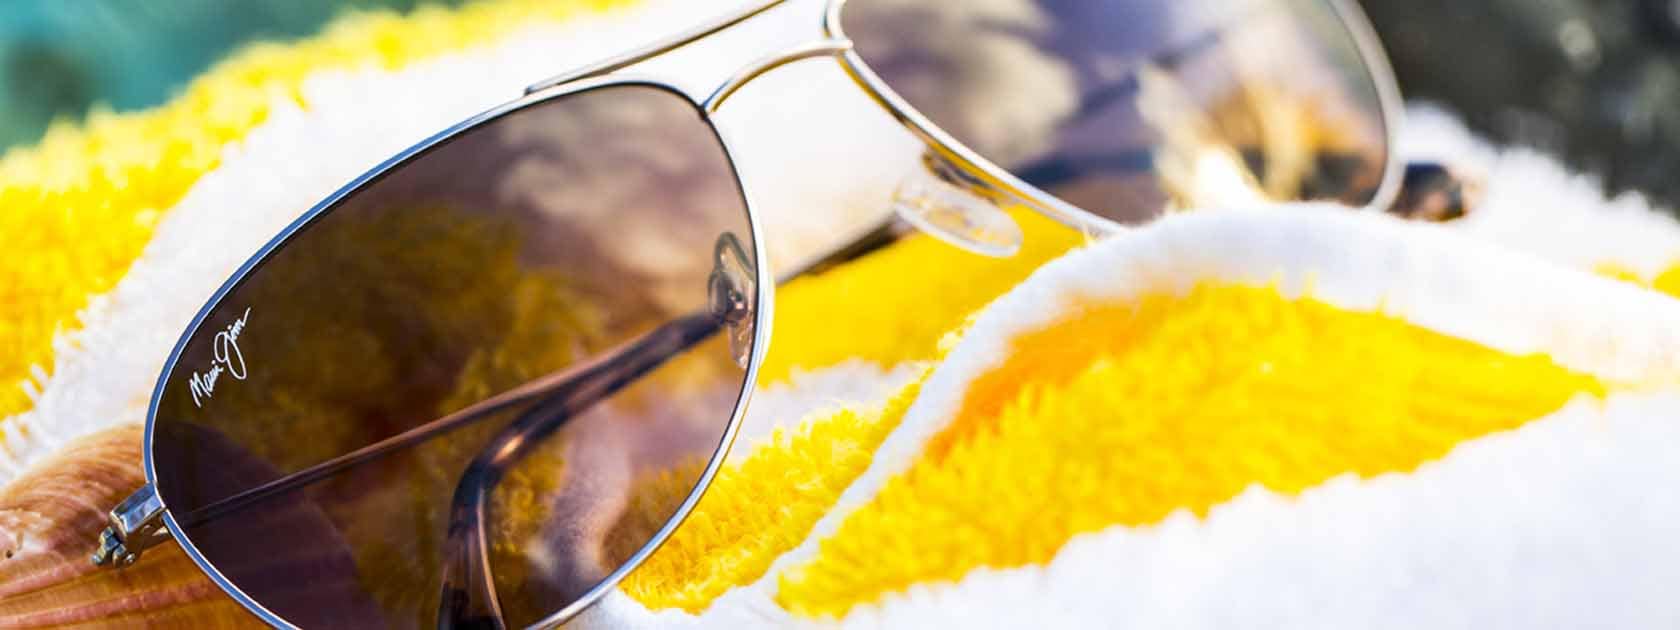 lunettes de soleil aviateur à la monture argentée avec verres gris présentées sur serviette rayée jaune et blanche